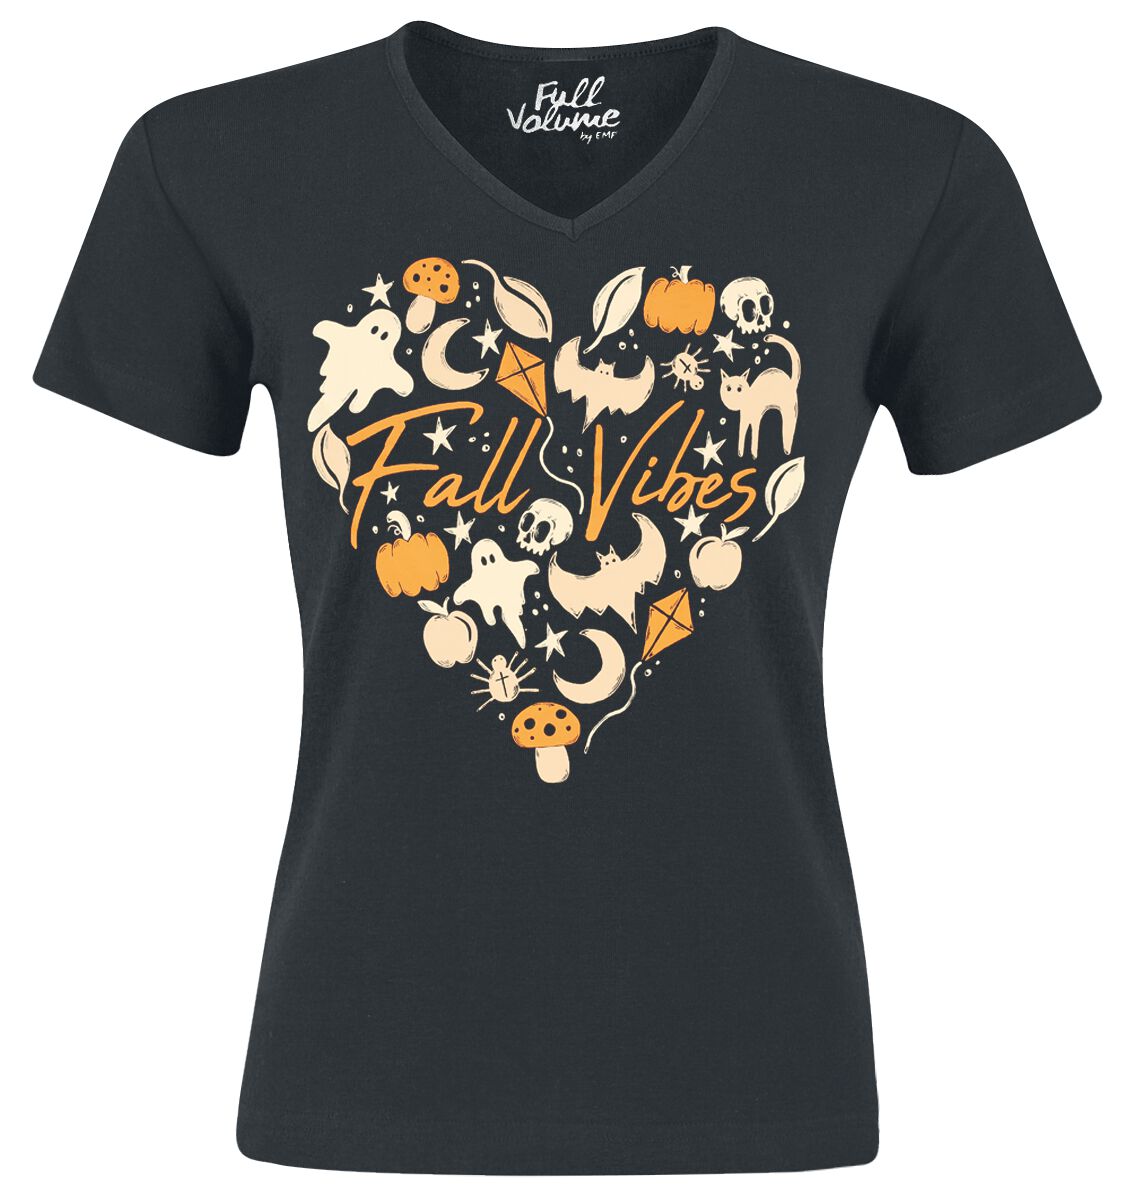 Full Volume by EMP T-Shirt - Halloween T-Shirt mit Fall Vibes Herzmotiv - S bis 4XL - für Damen - Größe 3XL - schwarz